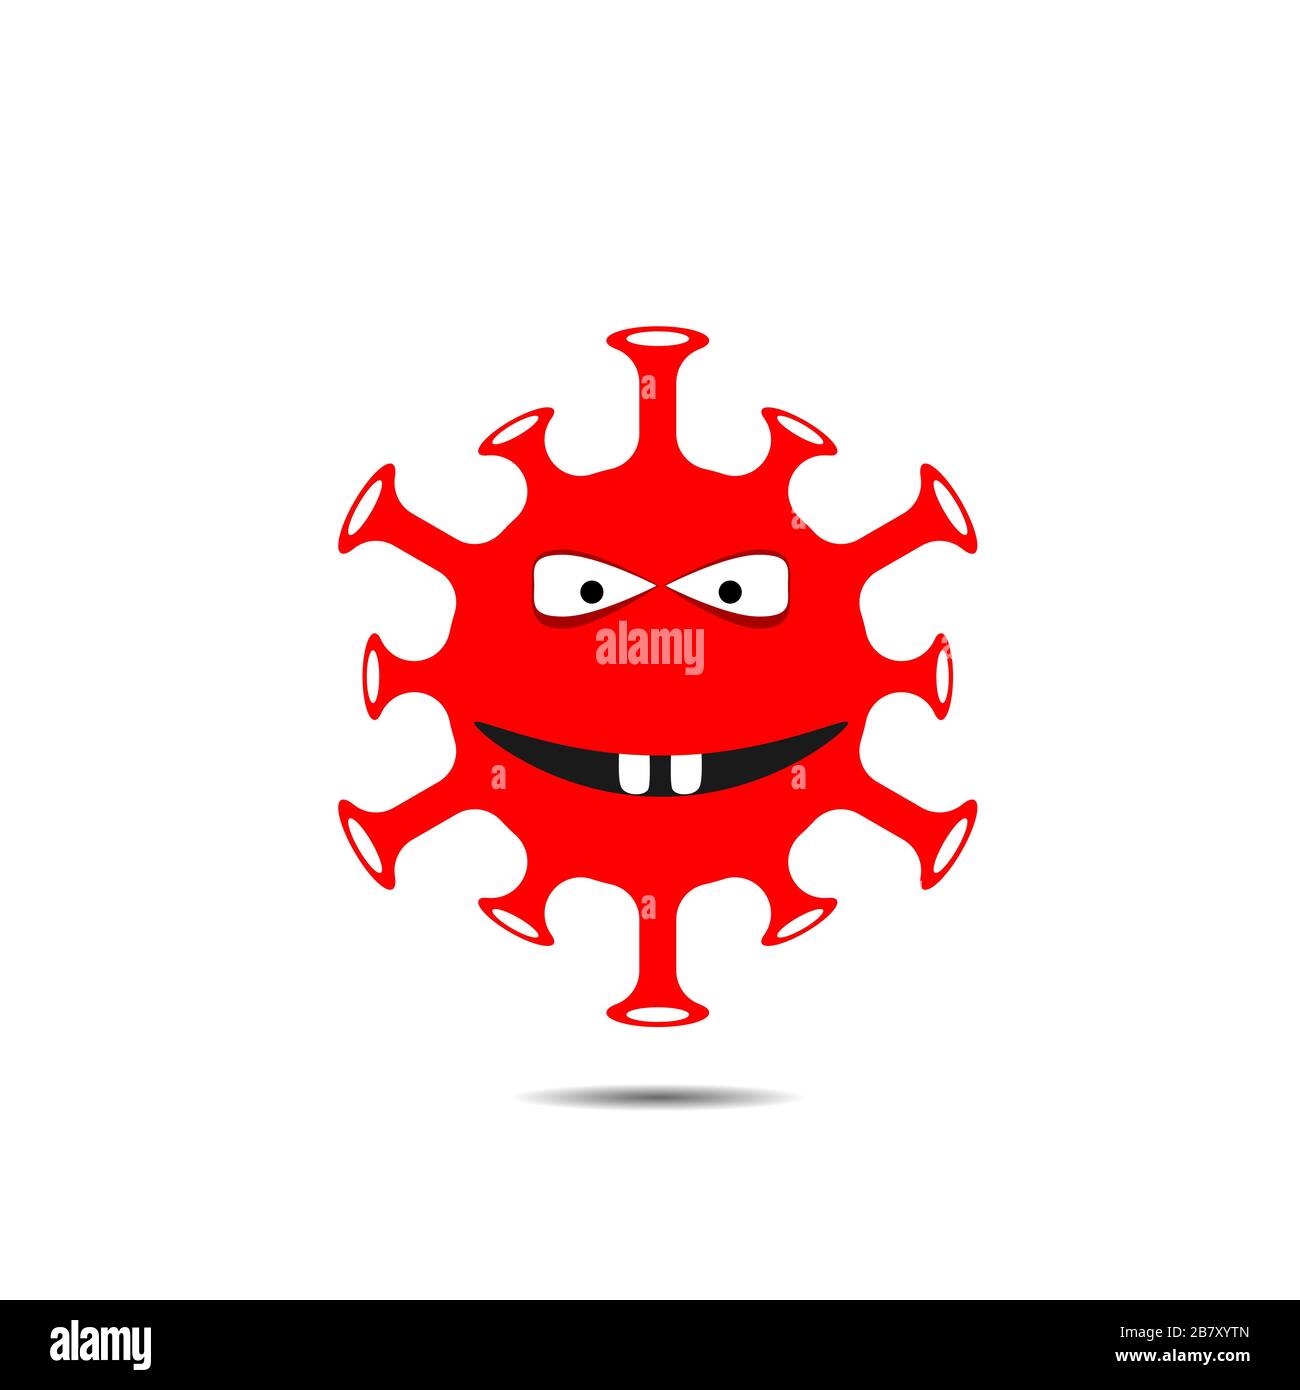 Red coronavirus monster Stock Vector